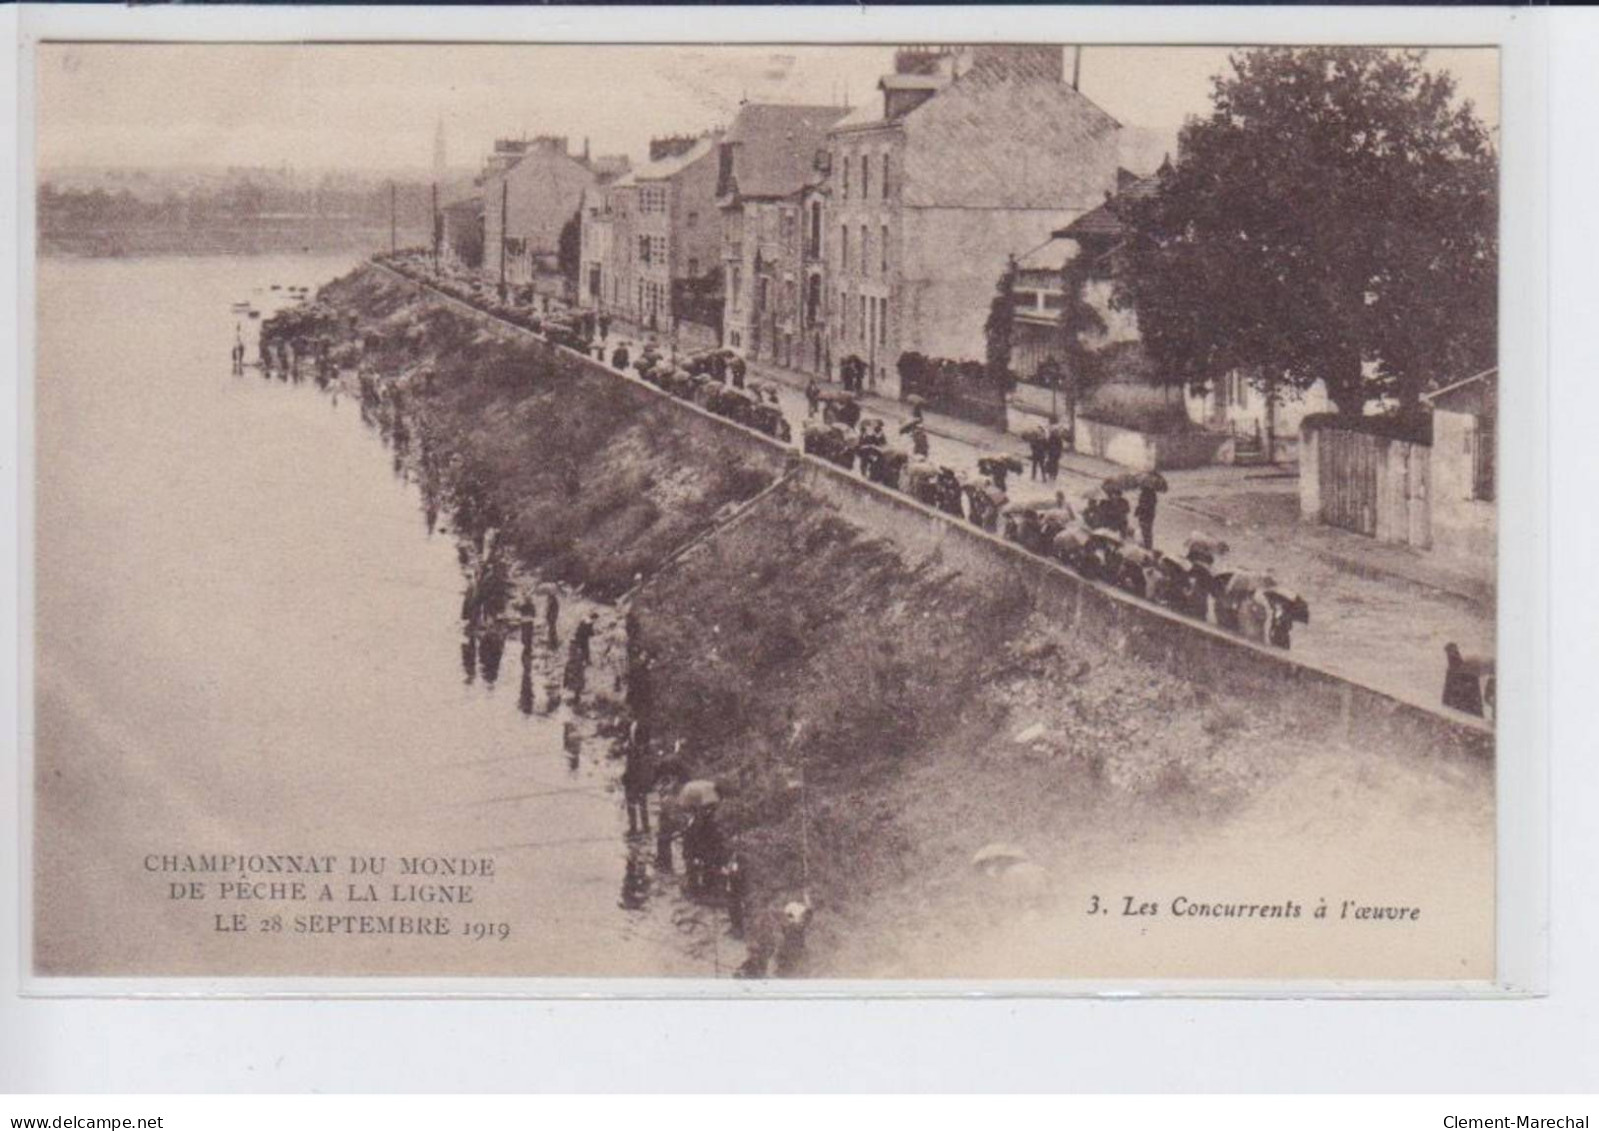 MAUVES: Lot De 6 CPA Championnat Du Monde De Peche à La Ligne 28 Septembre 1919 (Alsace - Alsaciennes)- Très Bon état - Mauves-sur-Loire